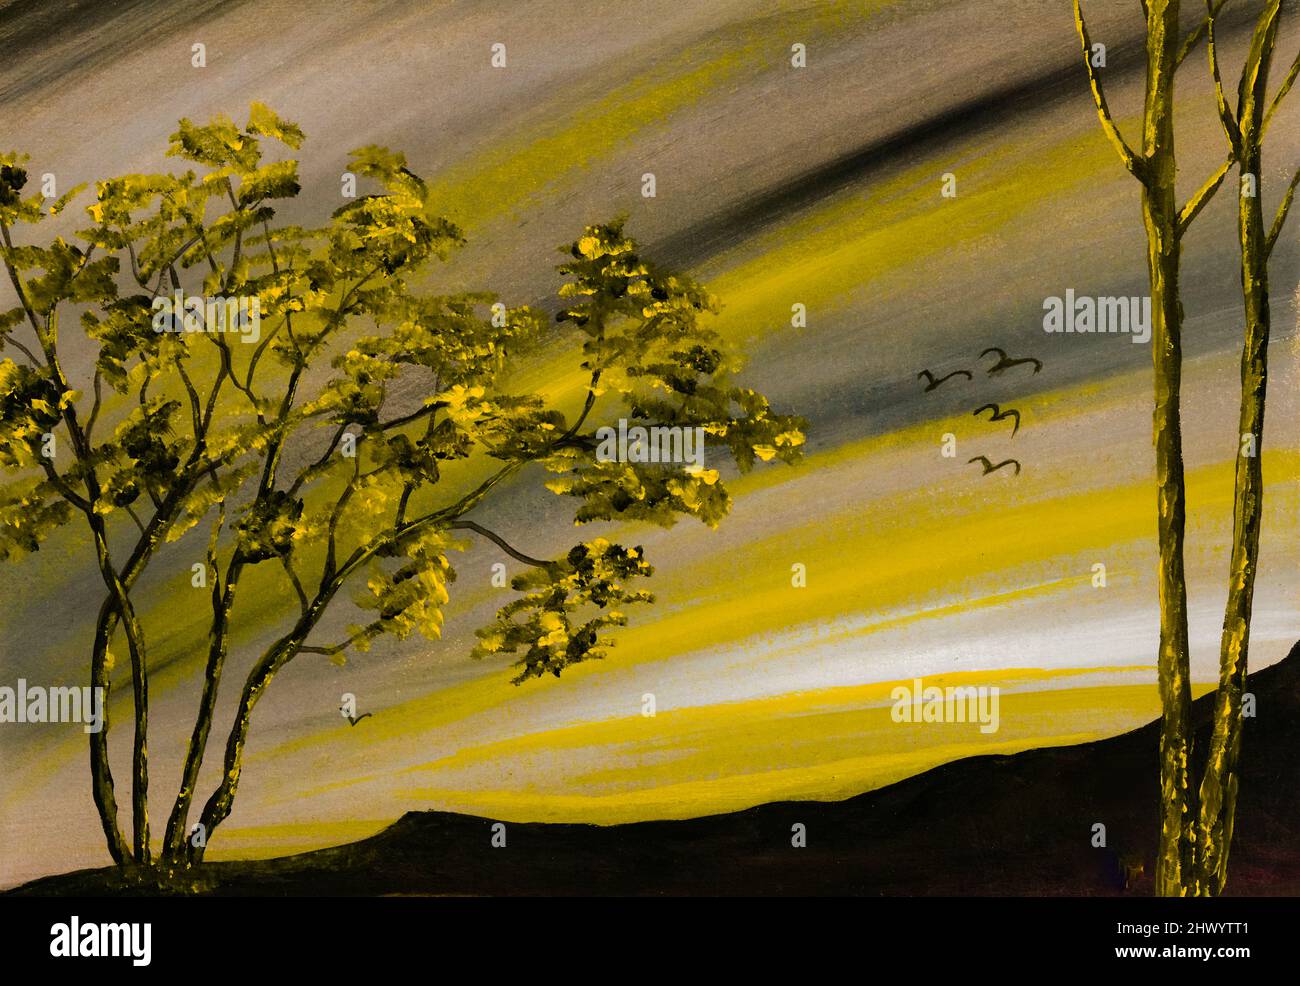 Peinture acrylique du ciel jaune et des arbres jaunes. Peint par le photographe. Banque D'Images